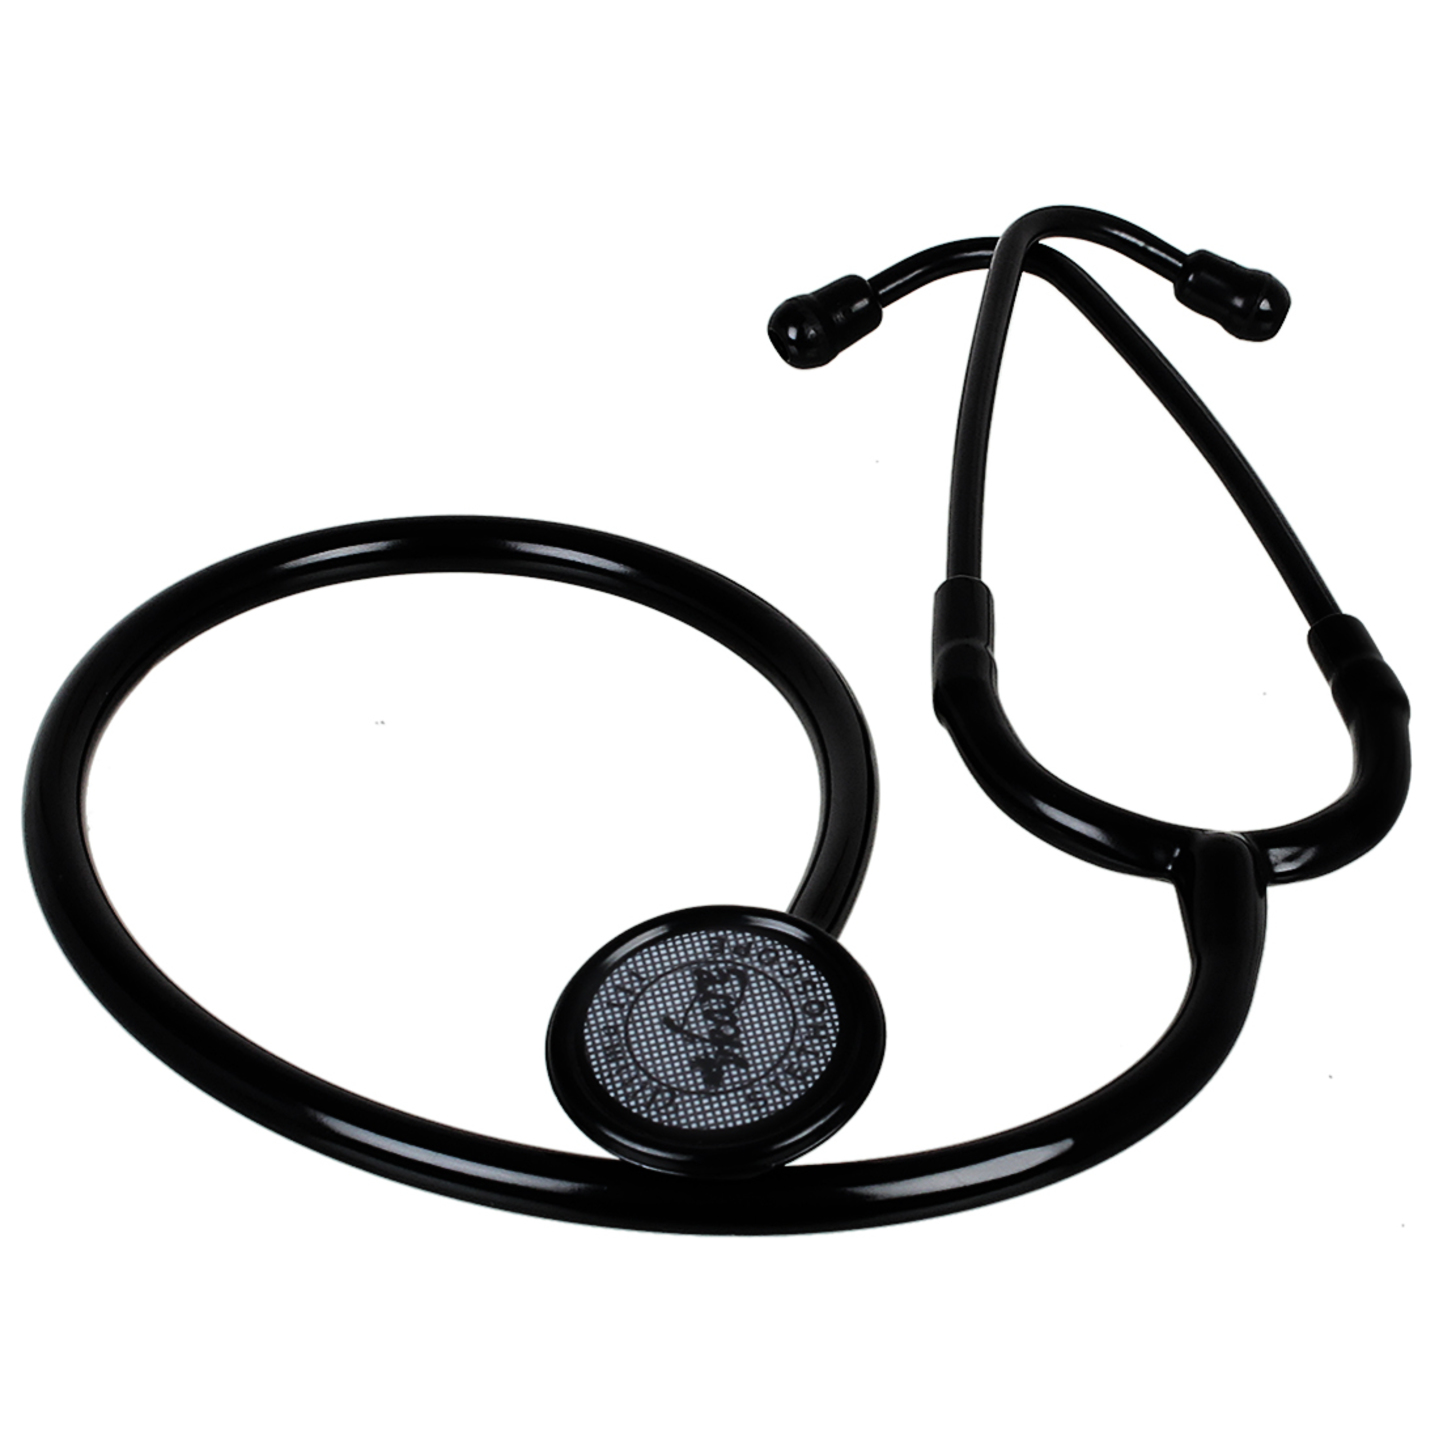 Vkare Single head Premium Stethoscope - Matte Black Edition